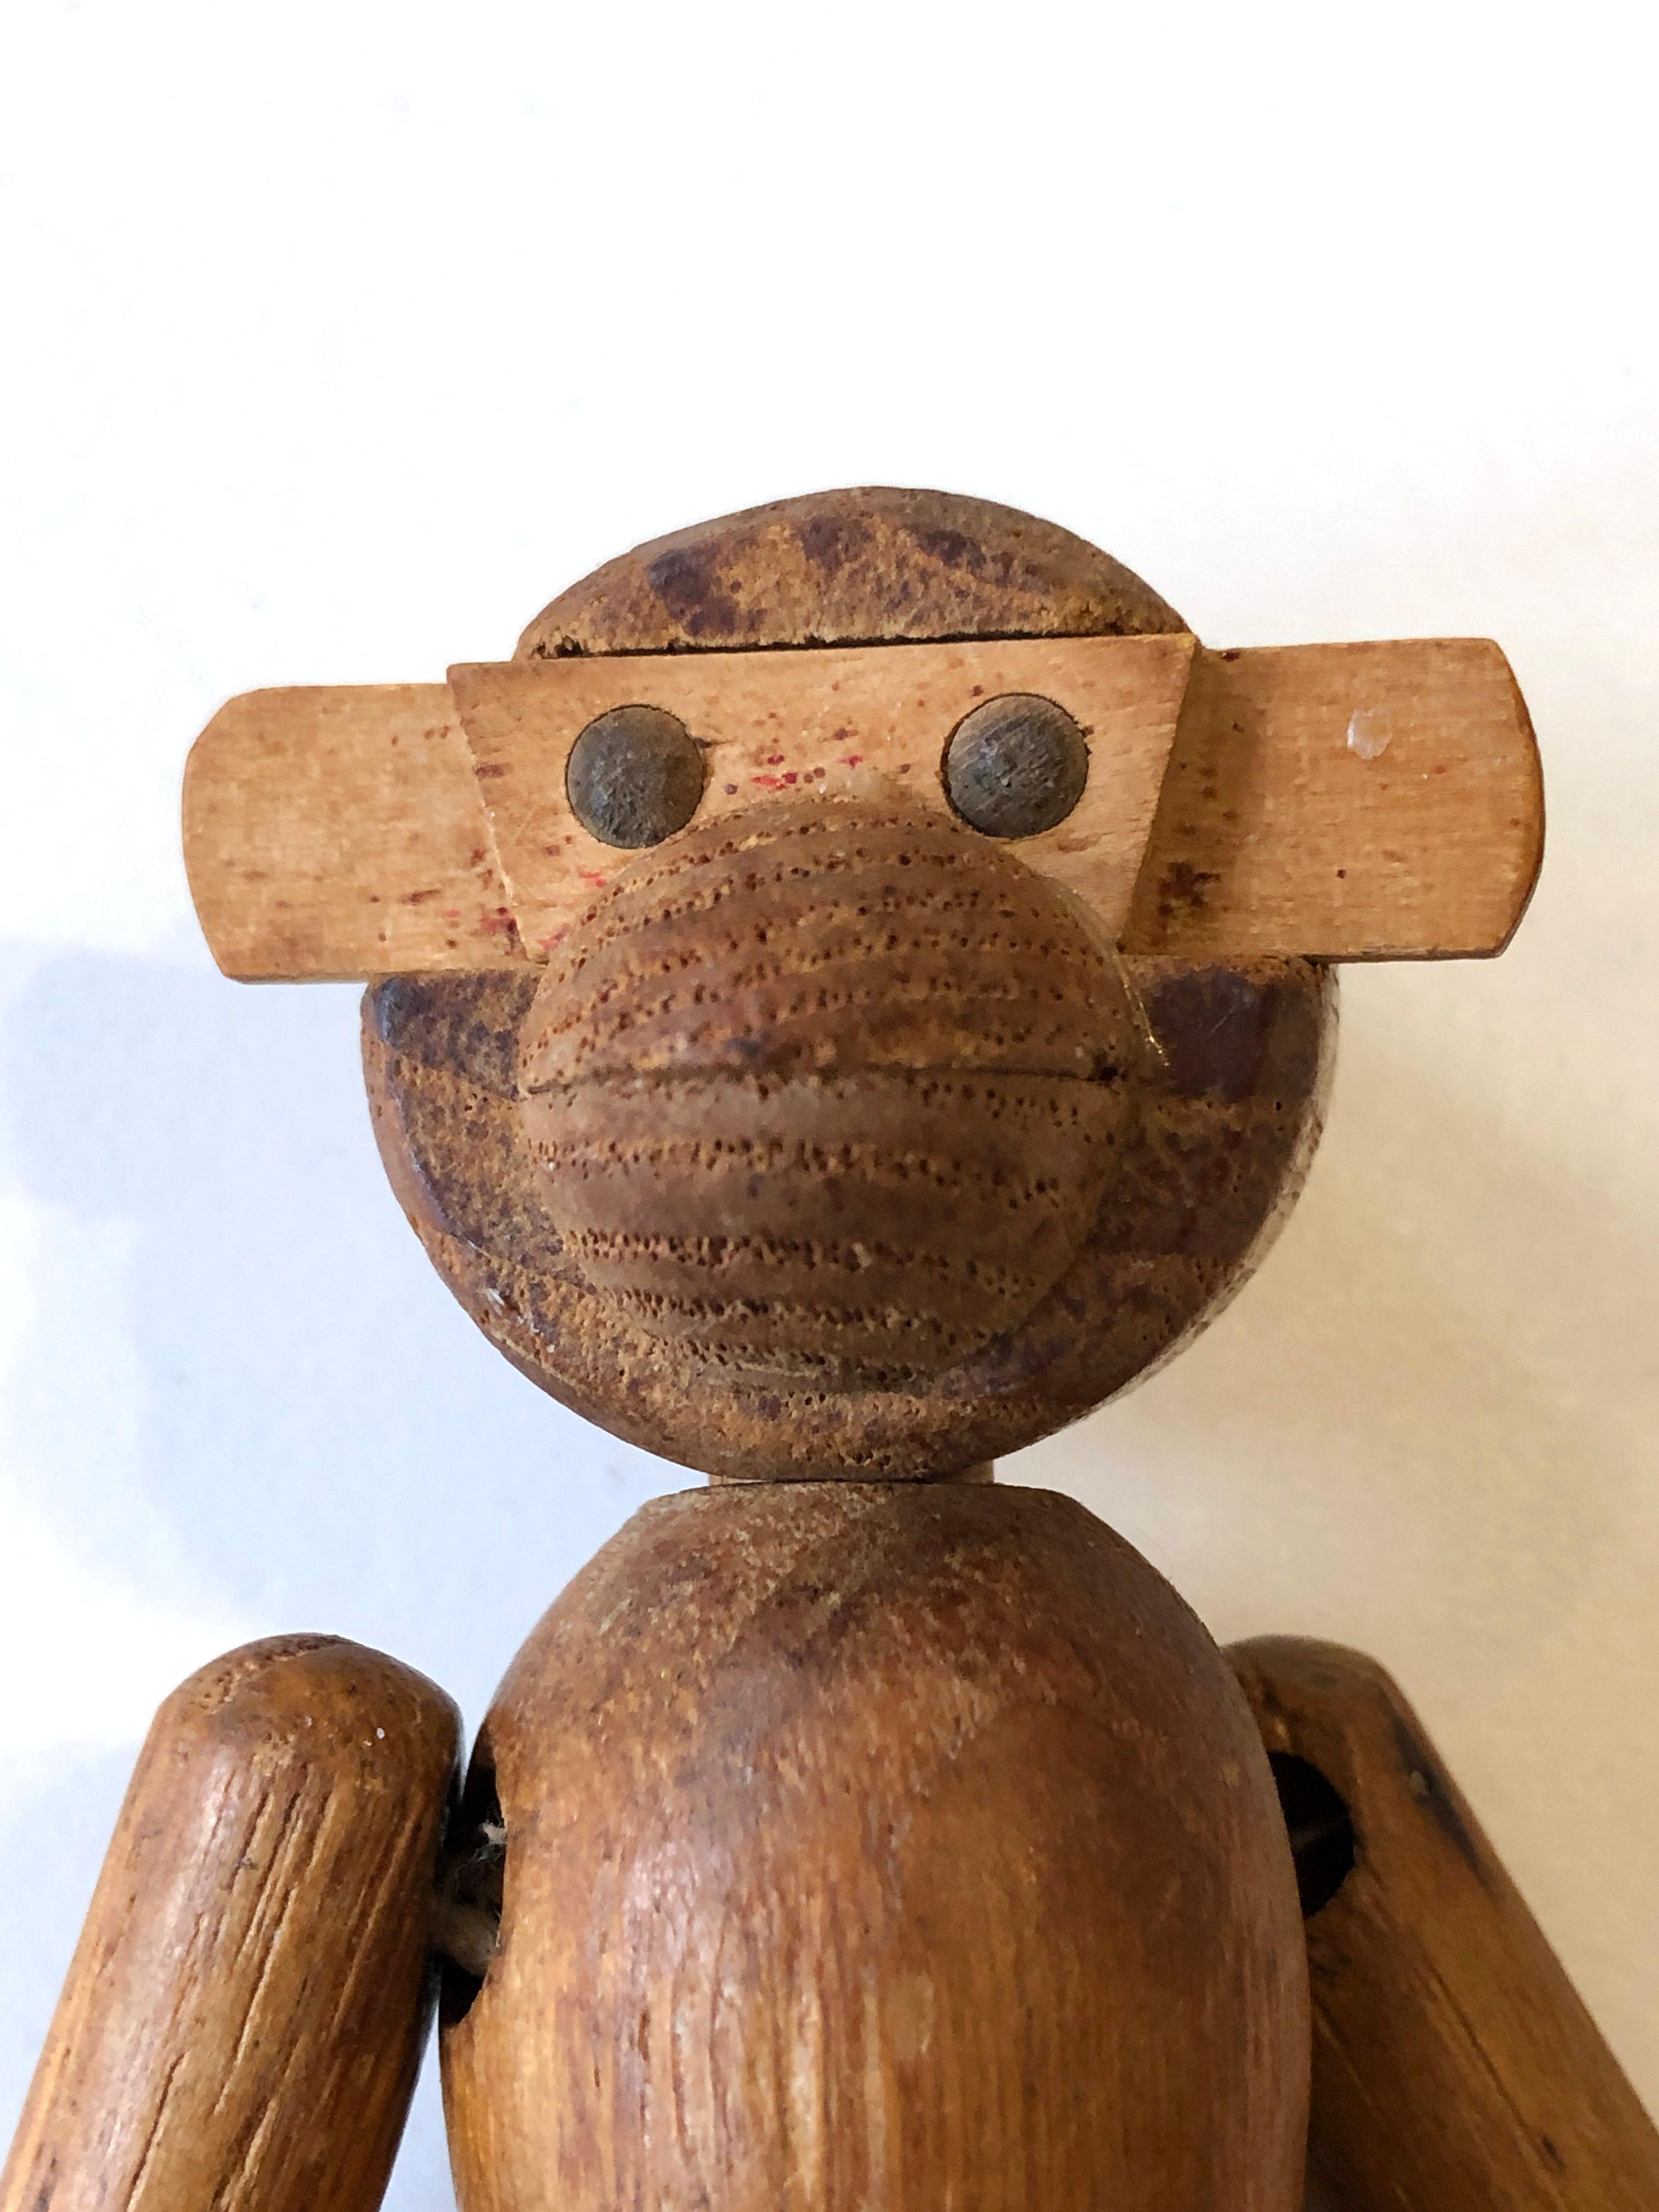 Petit singe en bois vintage des années 1950 par Kay Bojesen.
En bel état d'origine - belle patine sur le bois - un morceau de la main gauche du singe est manquant. 
Voir les photos. Vous pouvez facilement la restaurer.